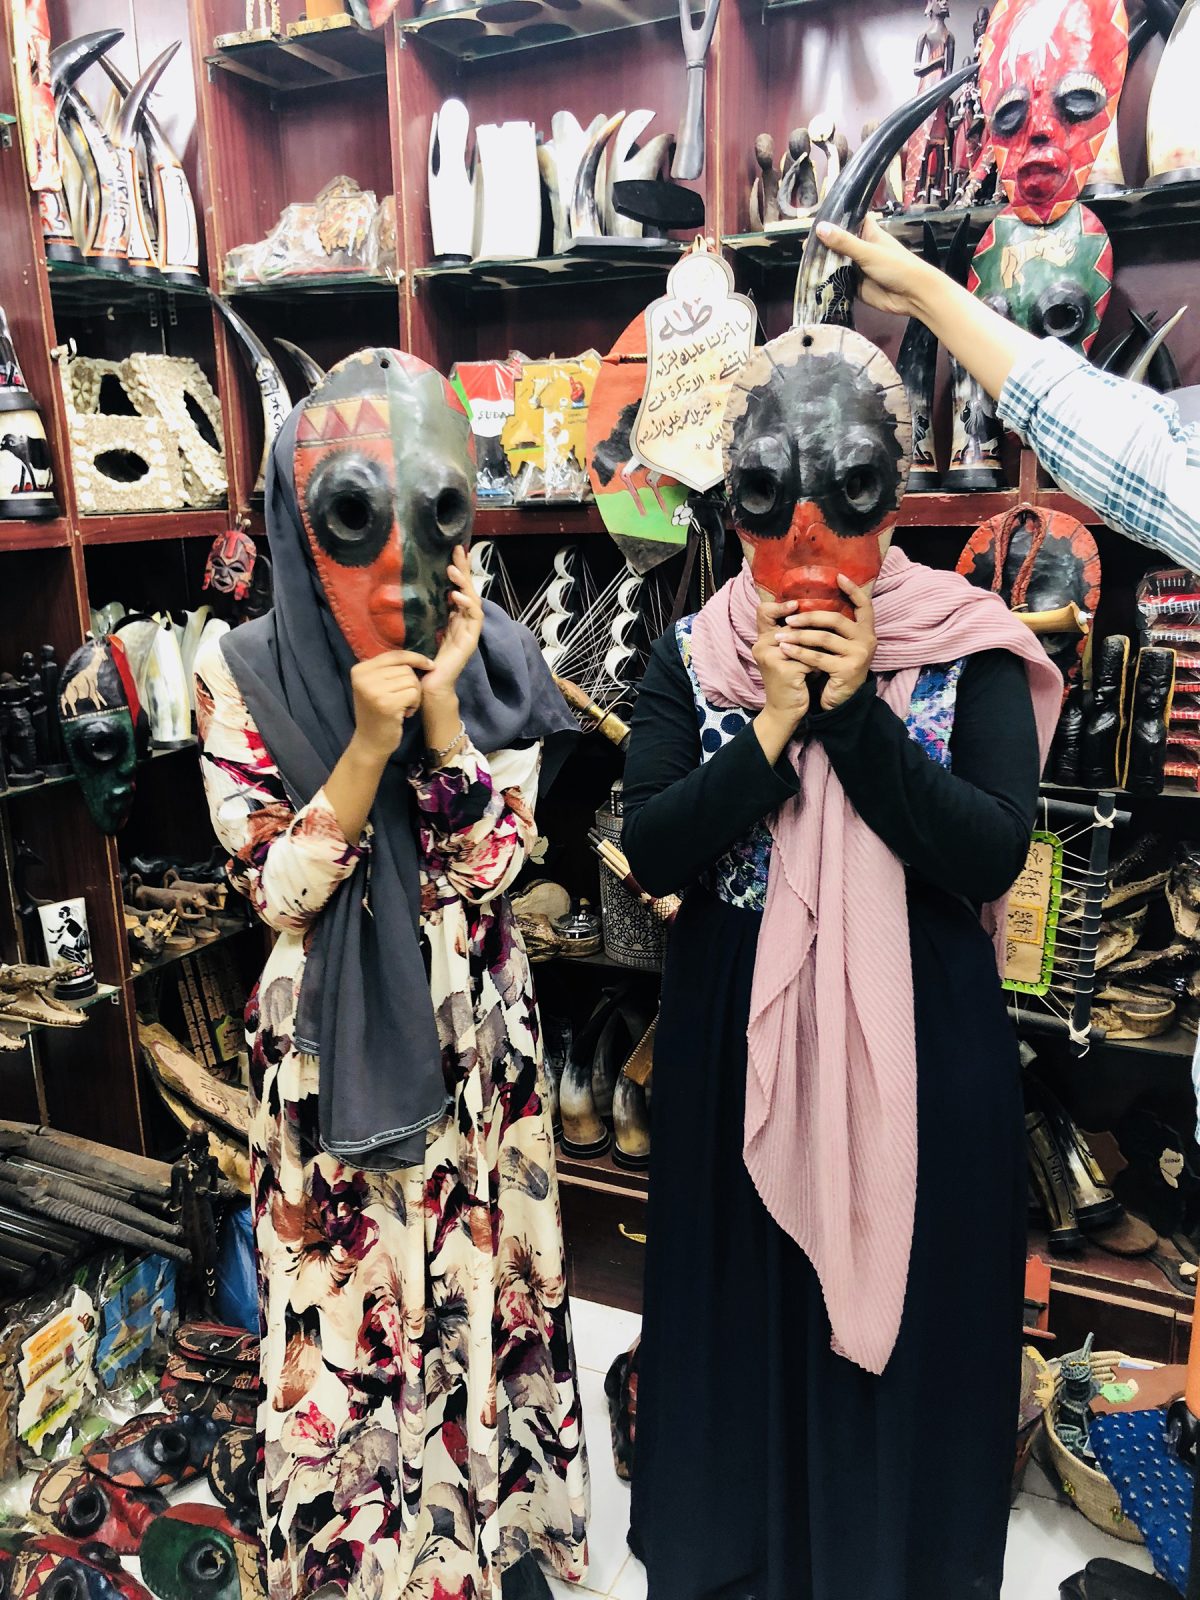 soug-omdurman-masks